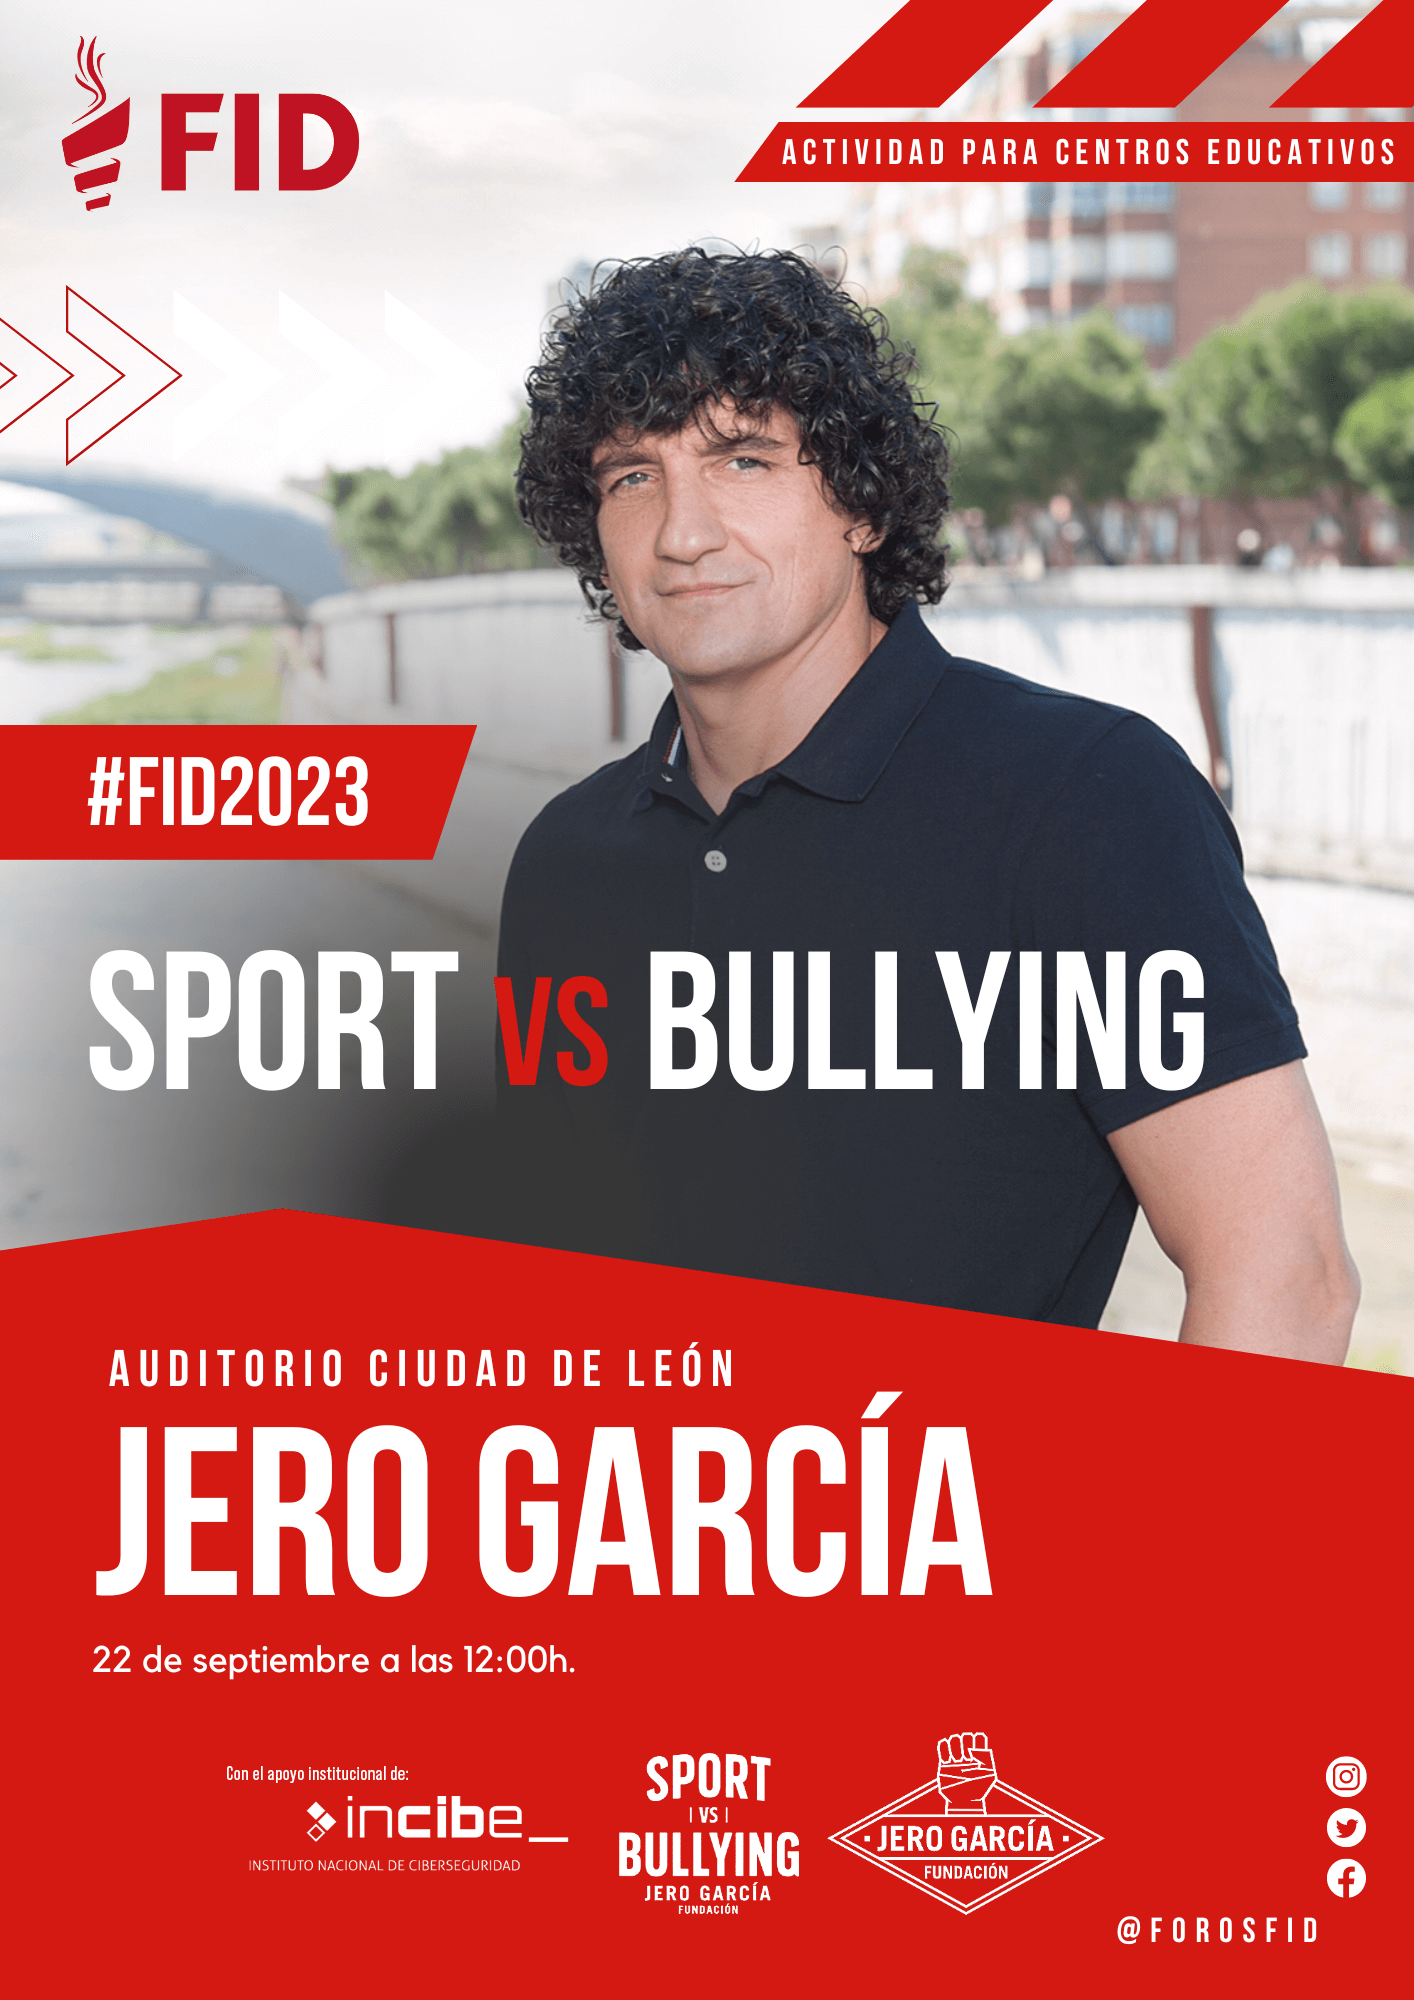 Sport vs Bullying Jero García FID